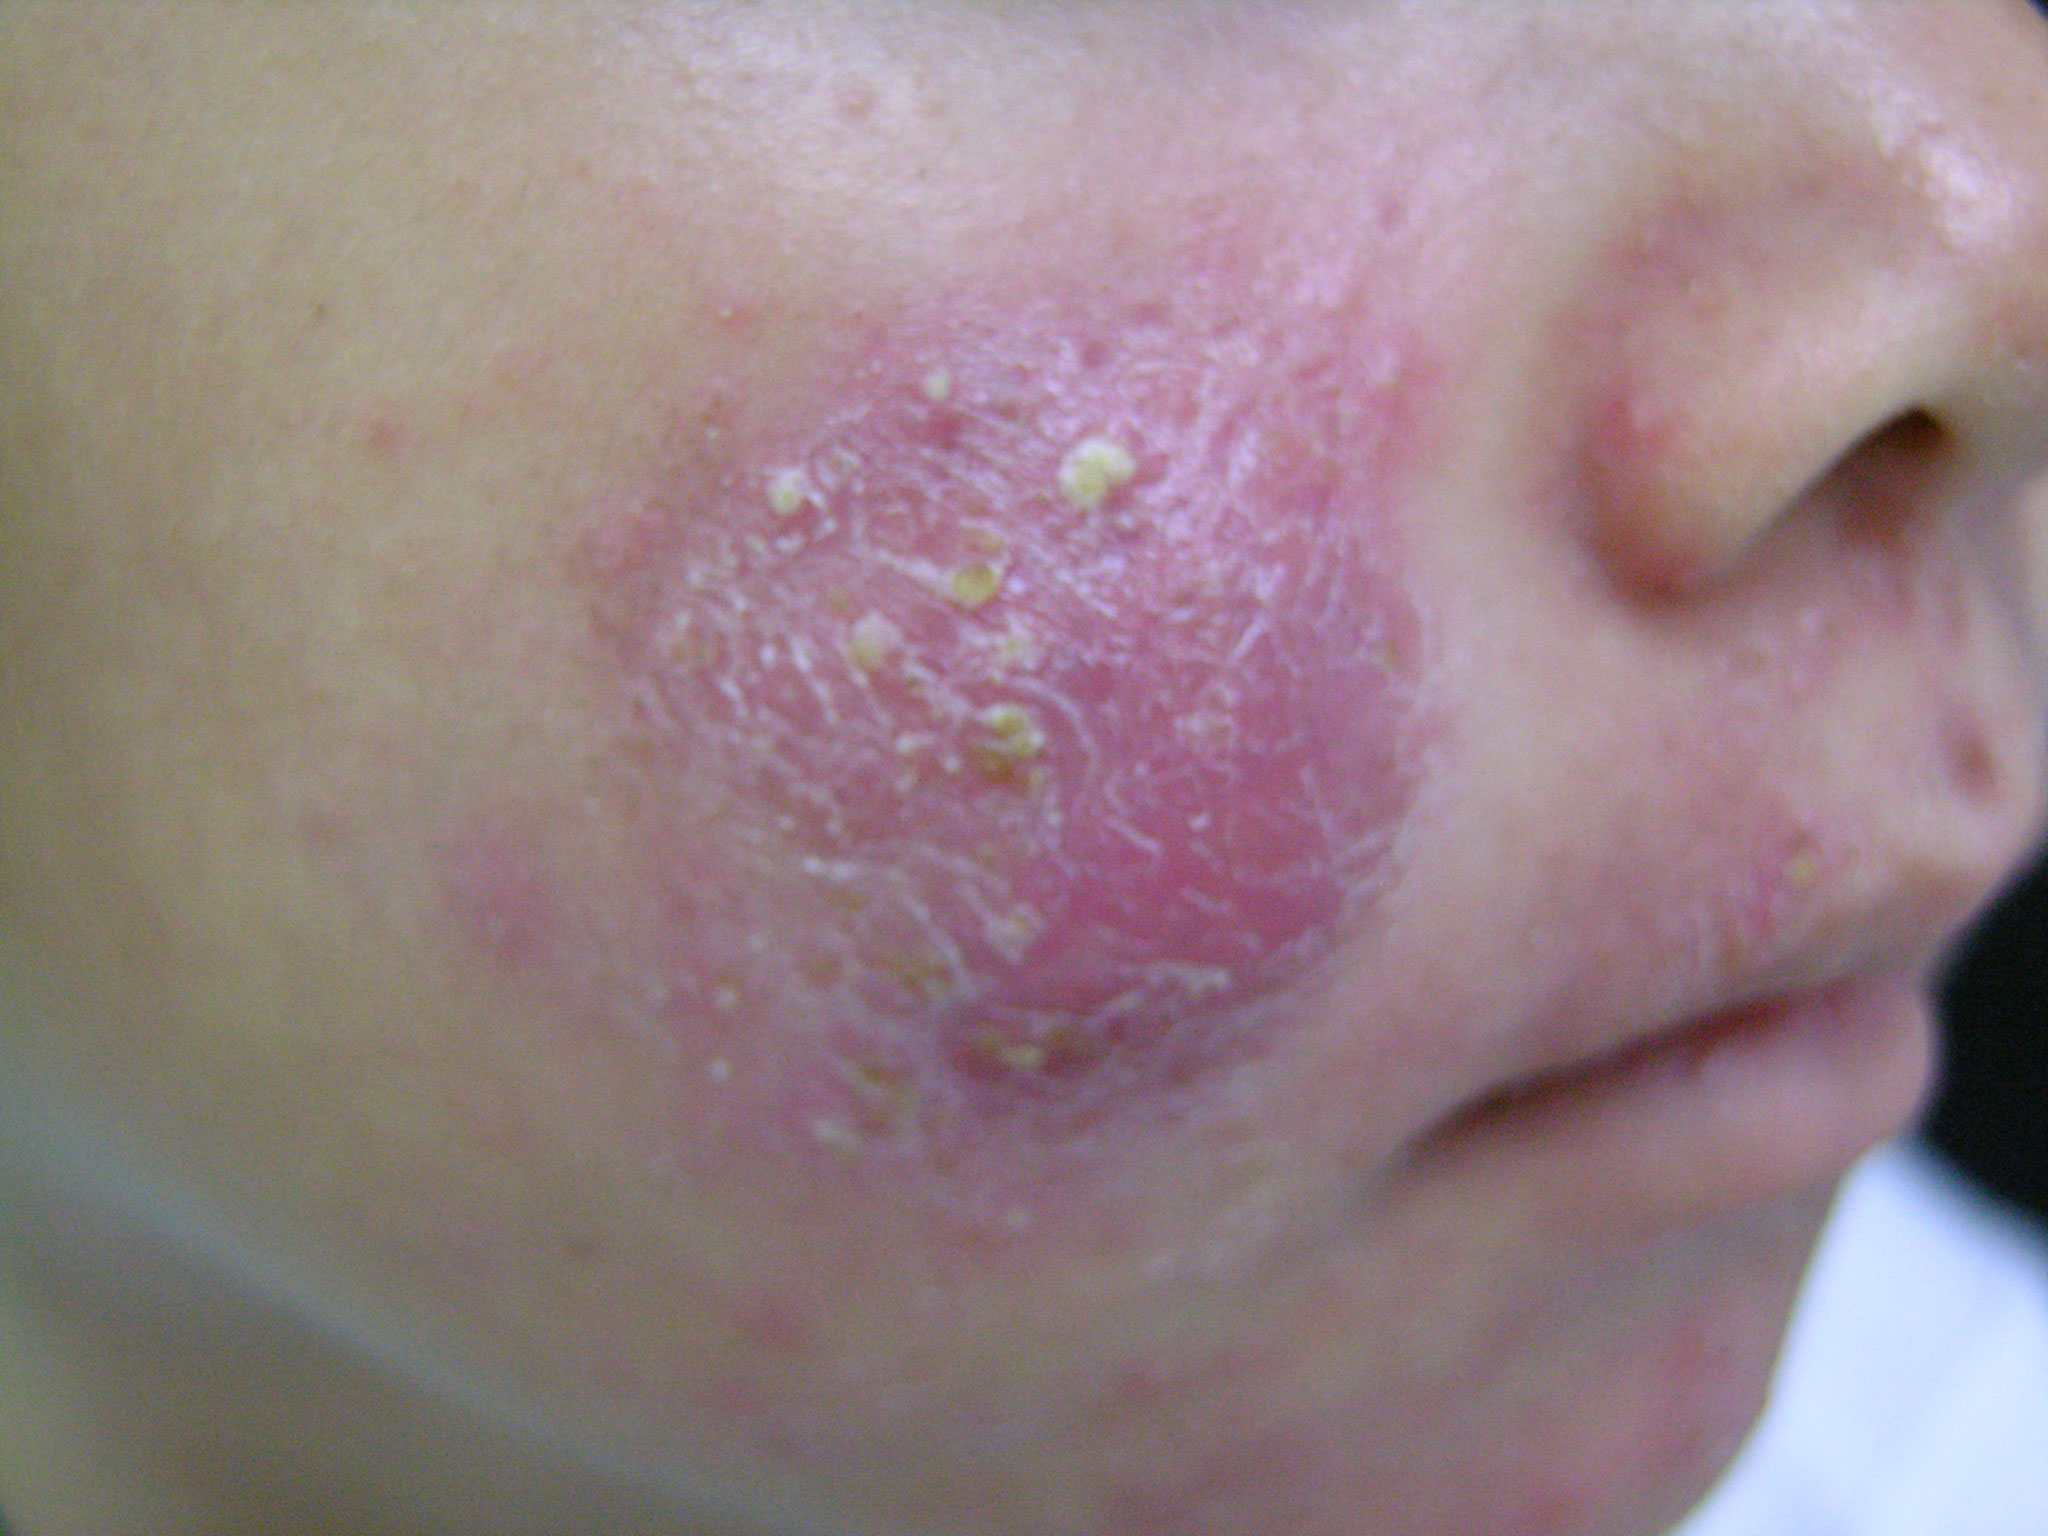 Perioral Dermatitis Picture Image on MedicineNet.com